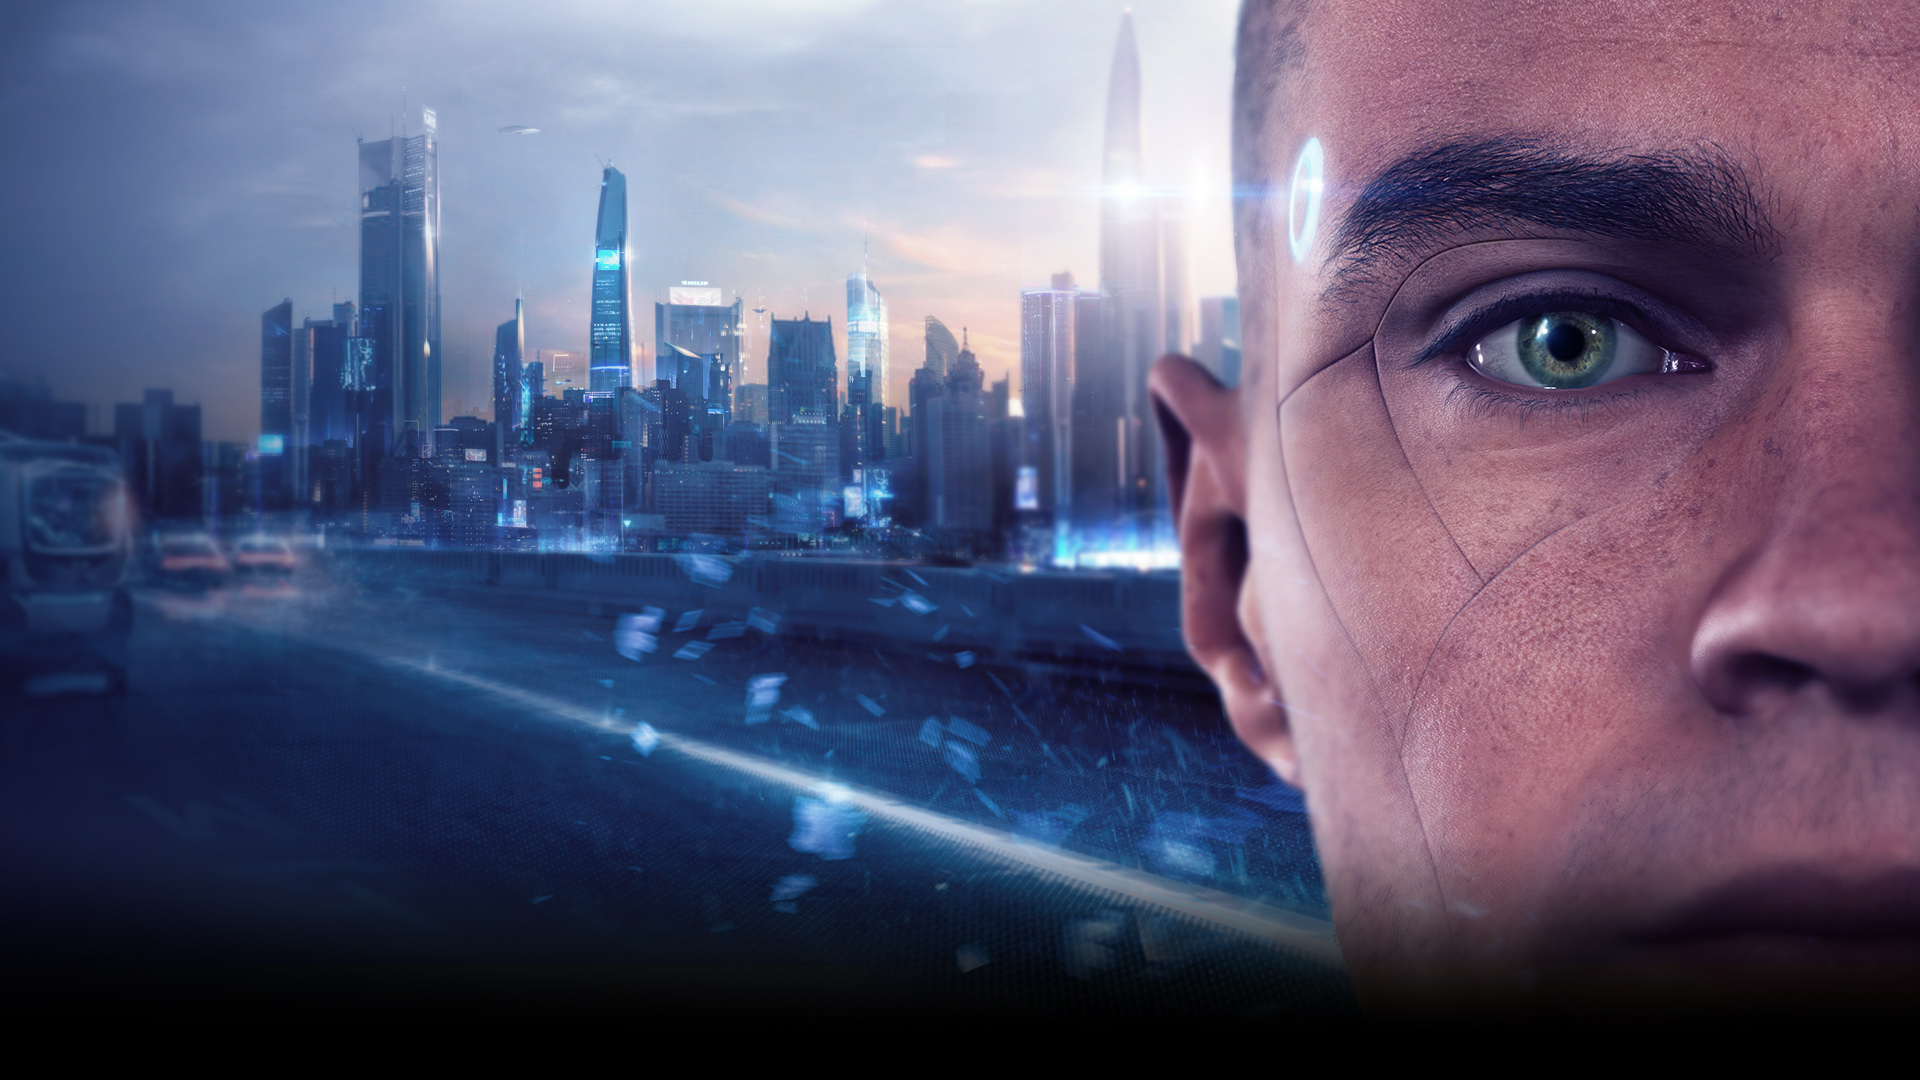 Detroit Become Human, análisis y opiniones del juego para PC